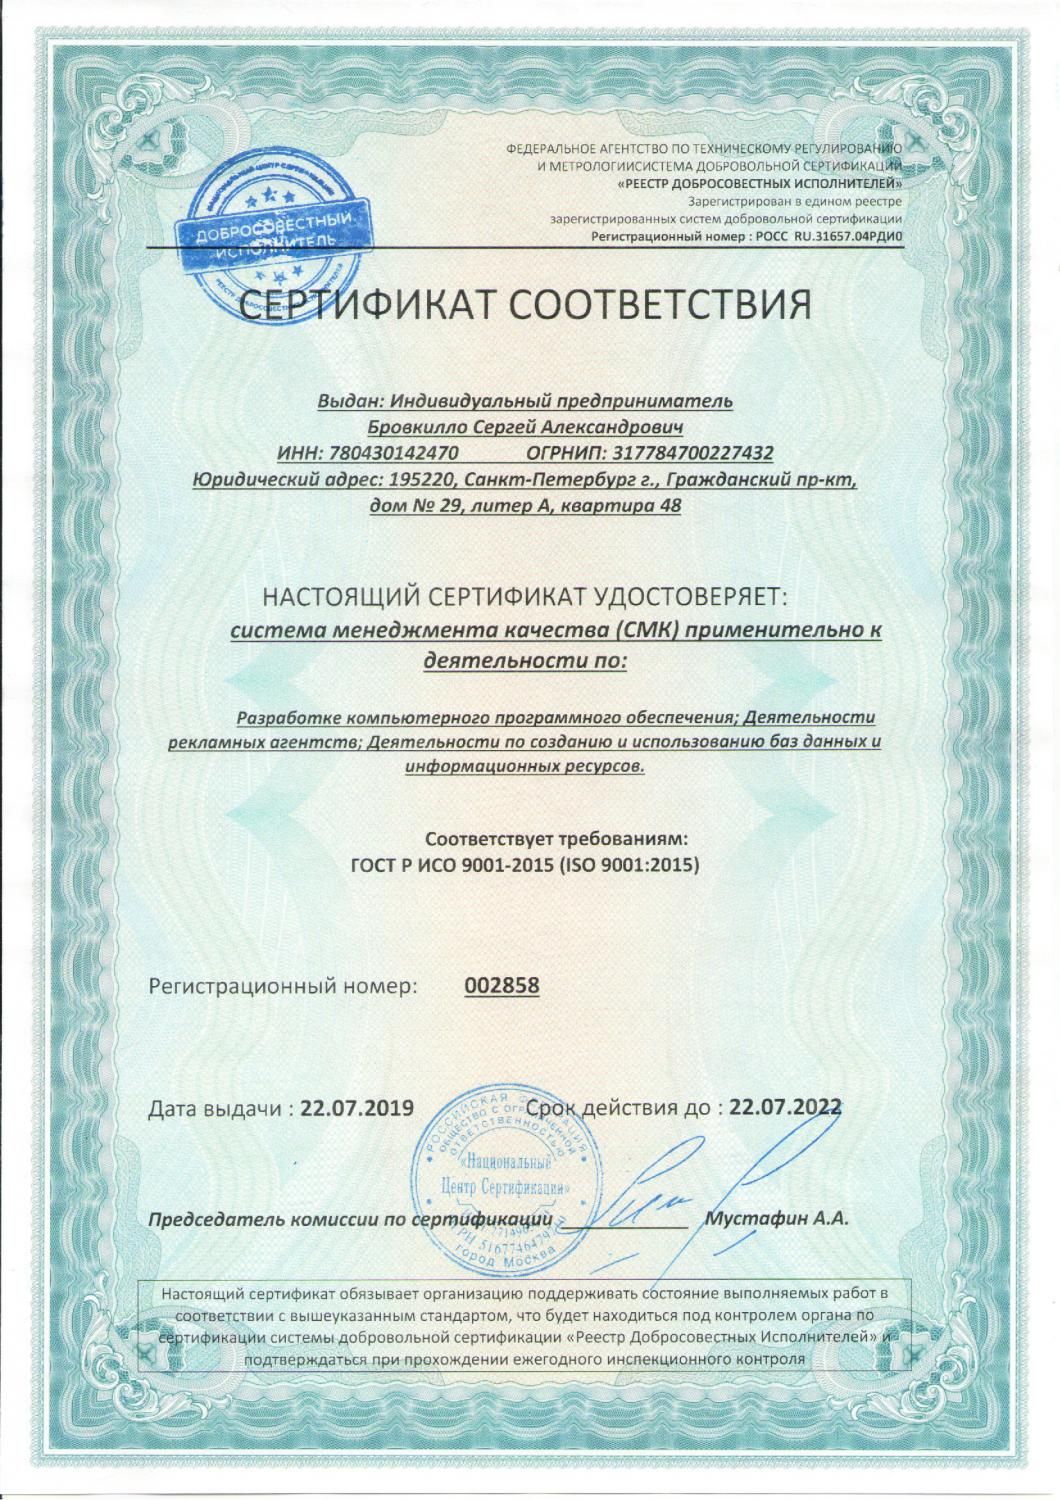 Сертификат соответствия ISO 9001:2015 в Москвы